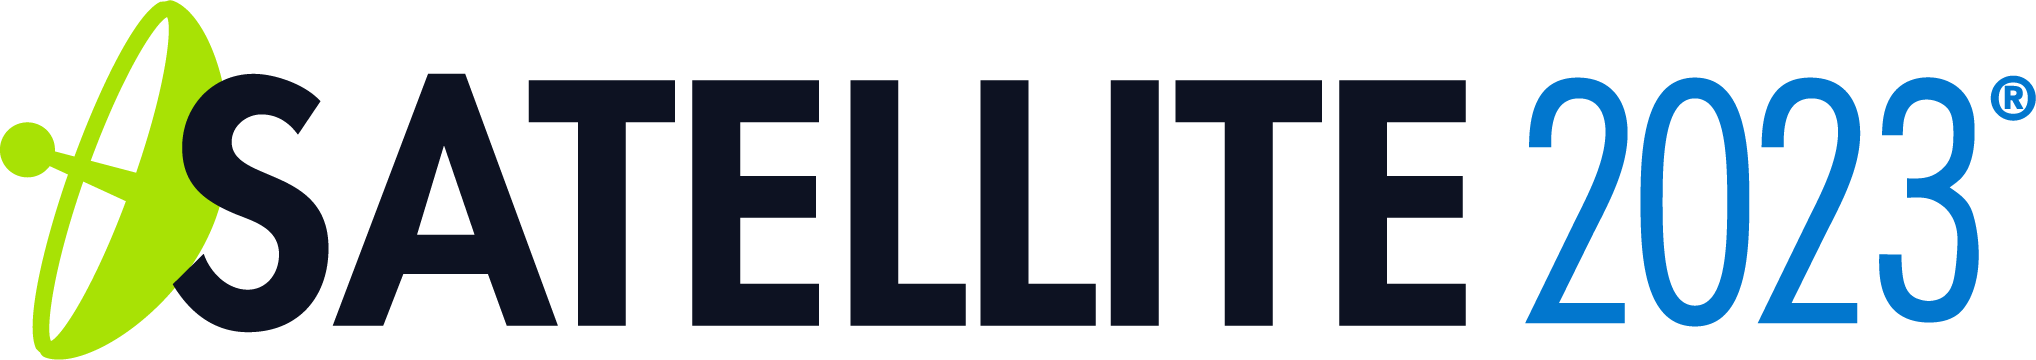 Satellite_2023_Logo.png